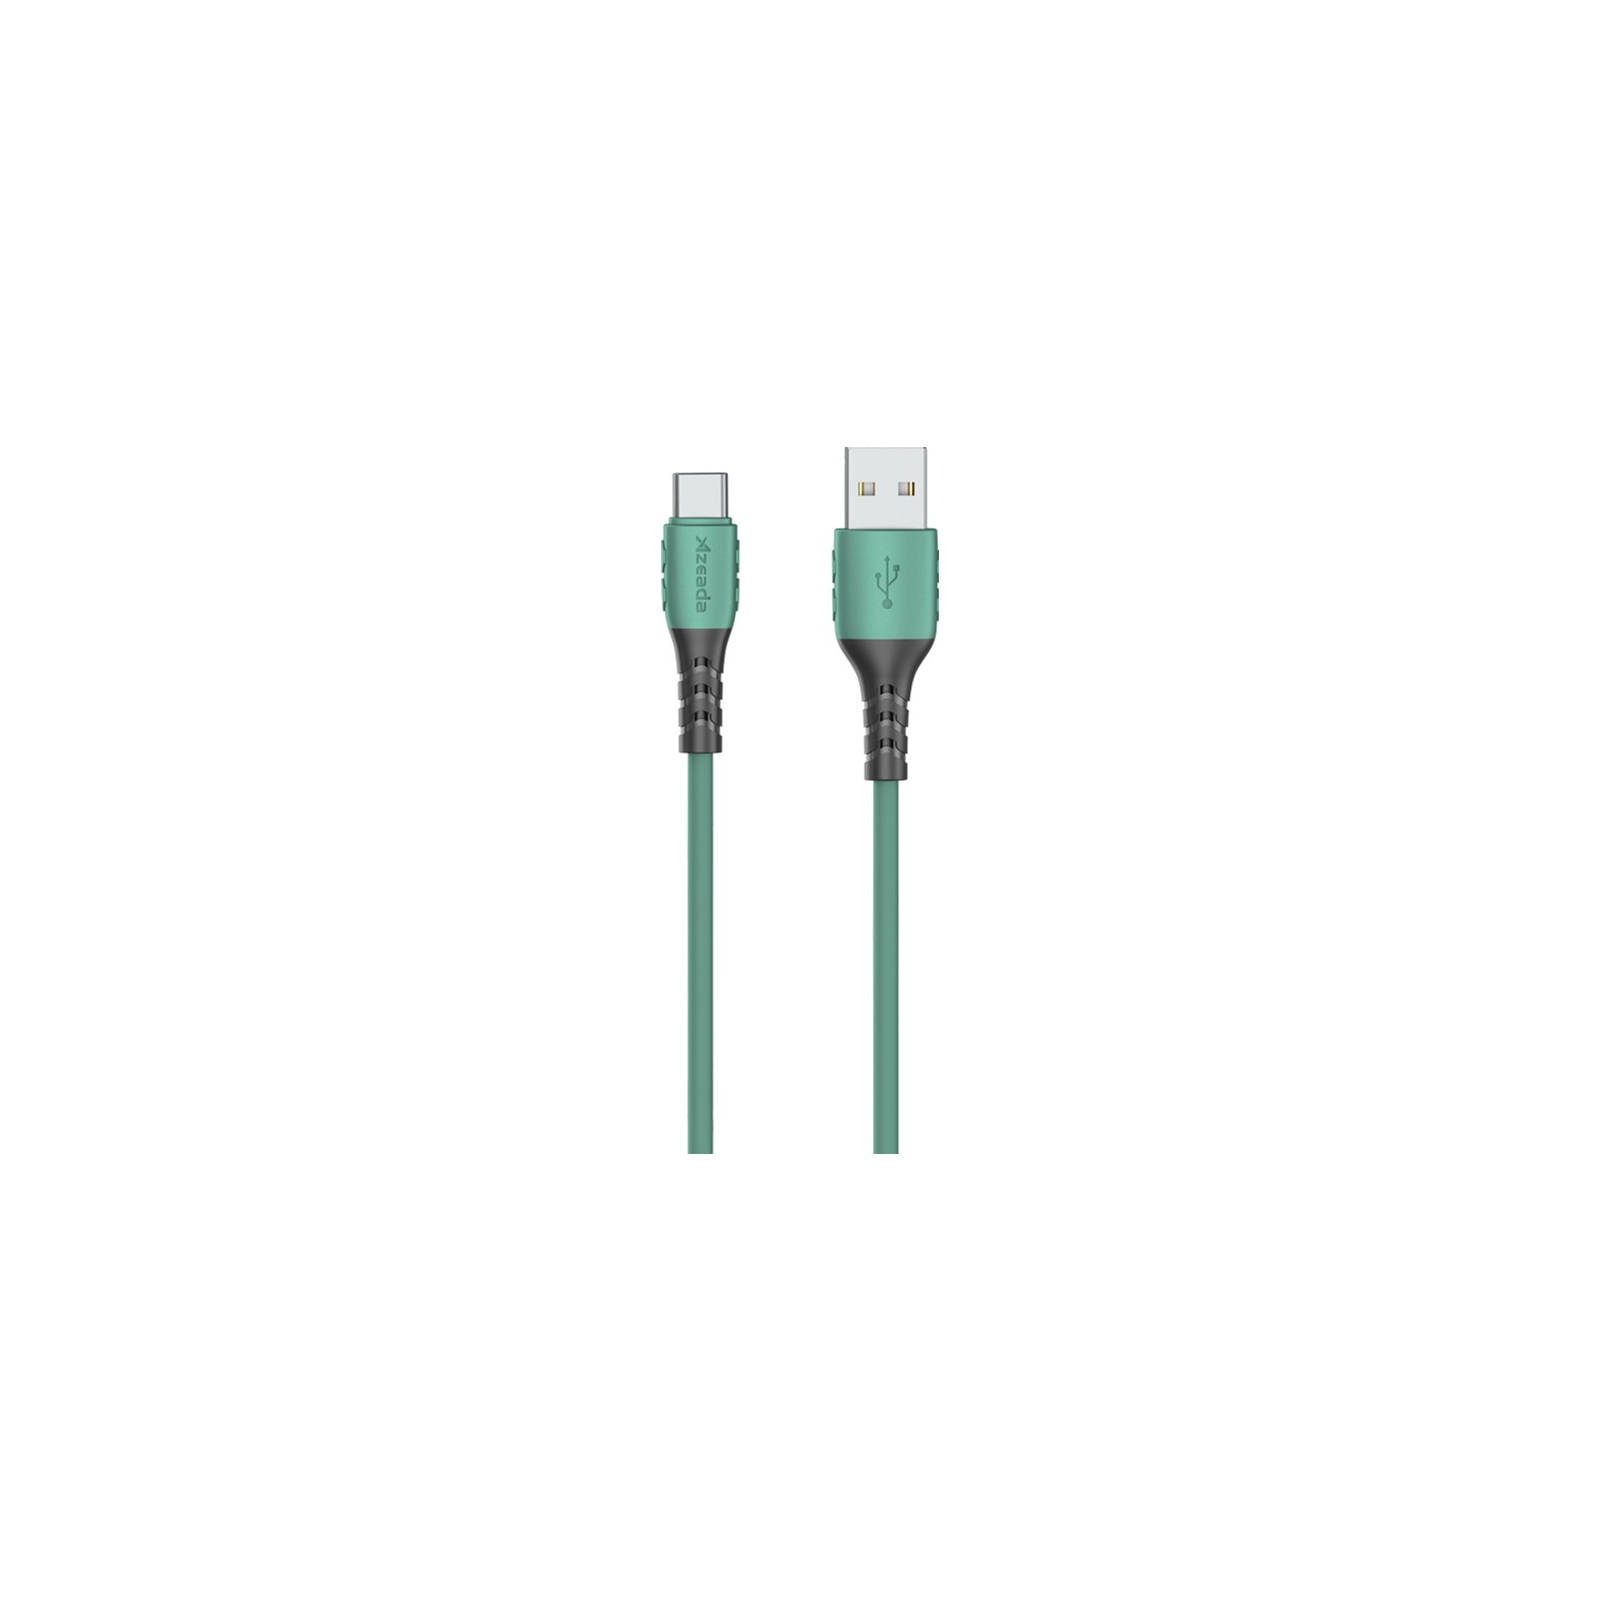 Дата кабель USB 2.0 AM to Type-C 1.0m PD-B51a White Proda (PD-B51a-WH)